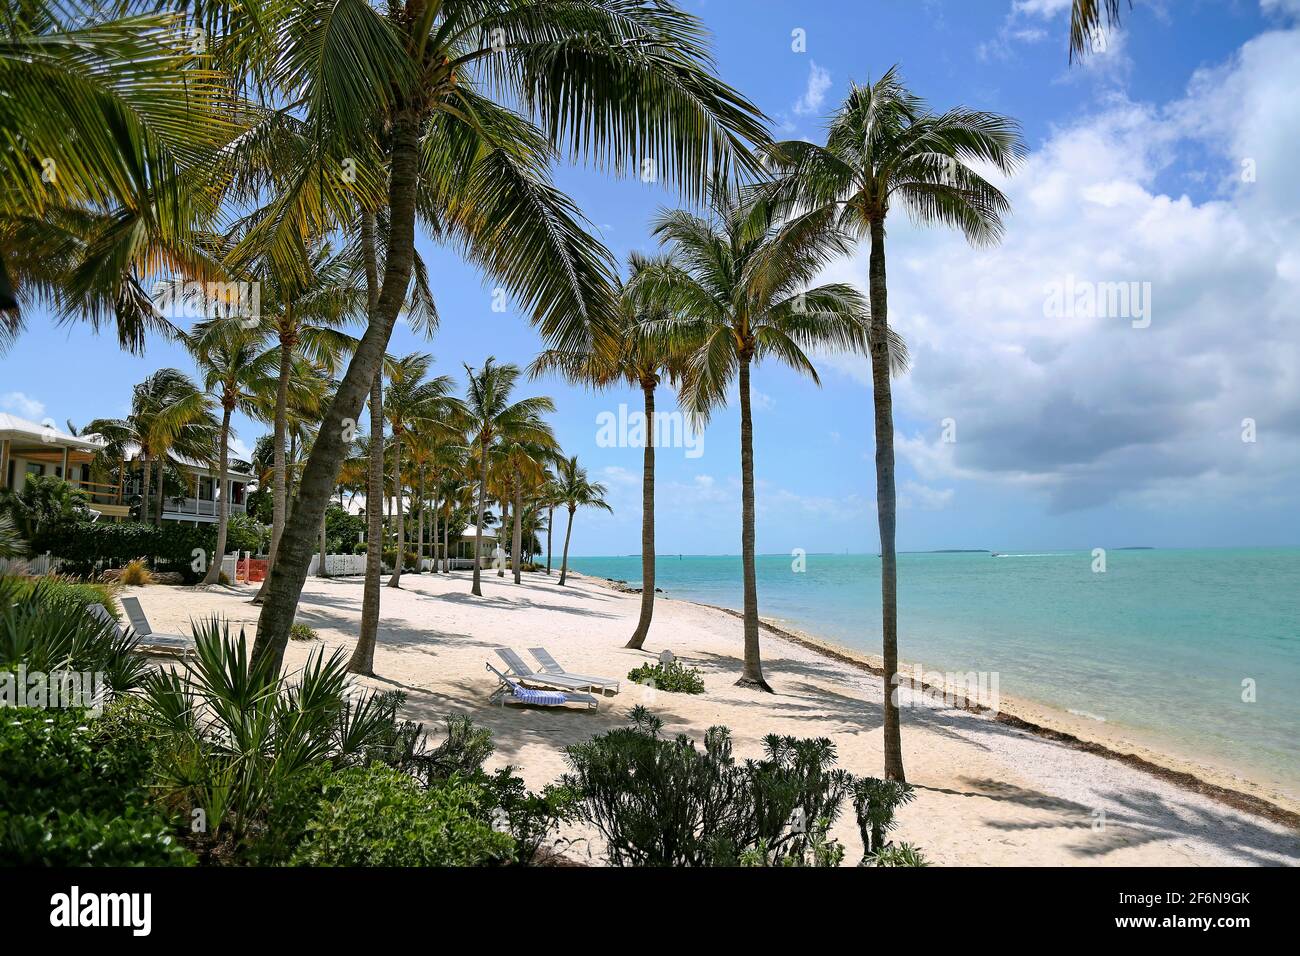 Tropische Palmen schweben auf einem weißen Sandstrand in der Nähe von glitzerndem blauem Wasser im wunderschönen Key West, Florida, dem südlichsten Punkt der USA Stockfoto